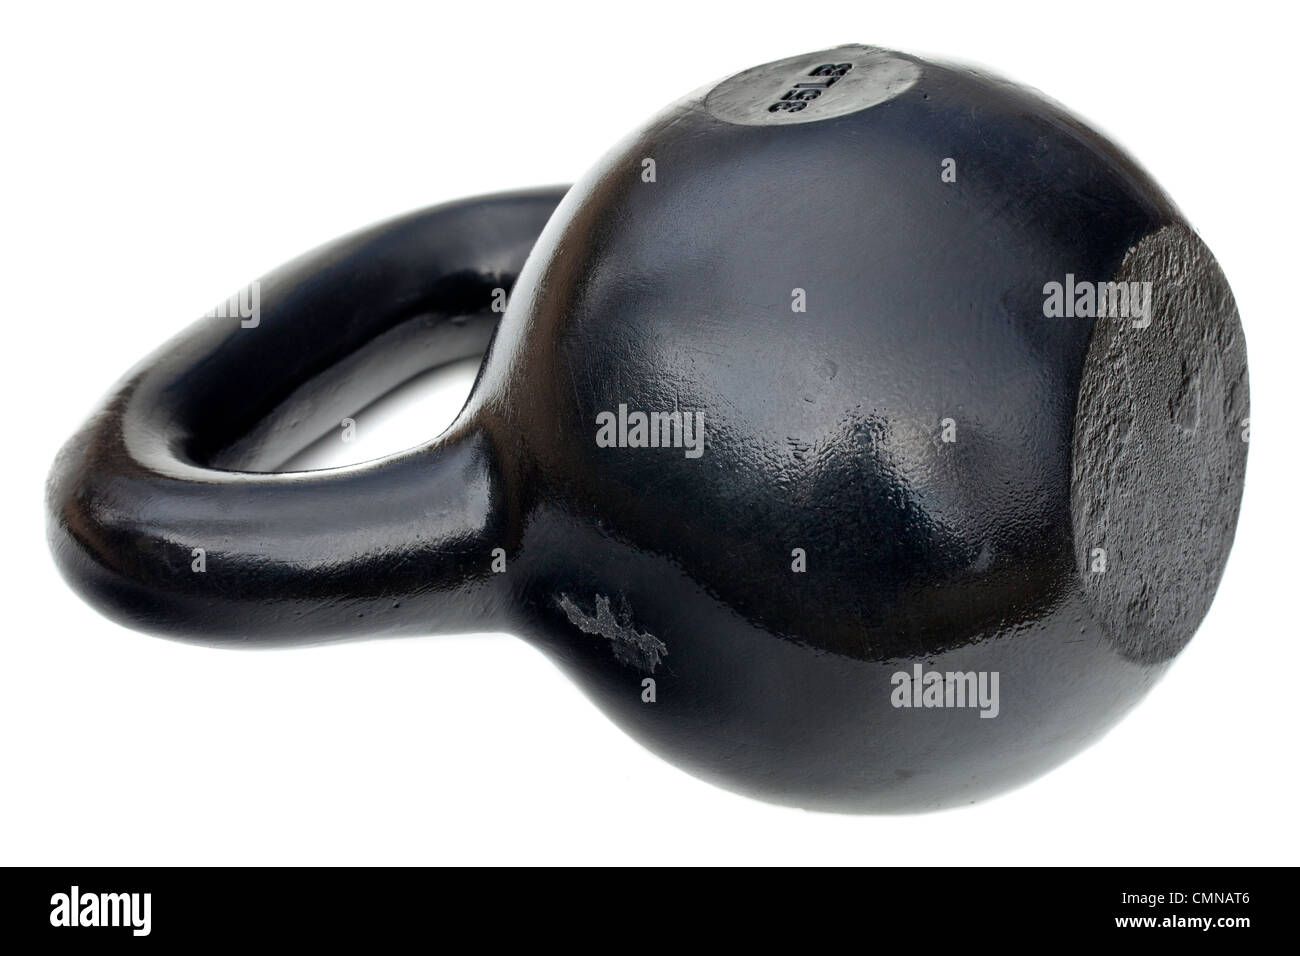 schwarz glänzend 35 lb Eisen Kettlebell für Gewichtheben und Fitness-Training, isoliert auf weiss Stockfoto